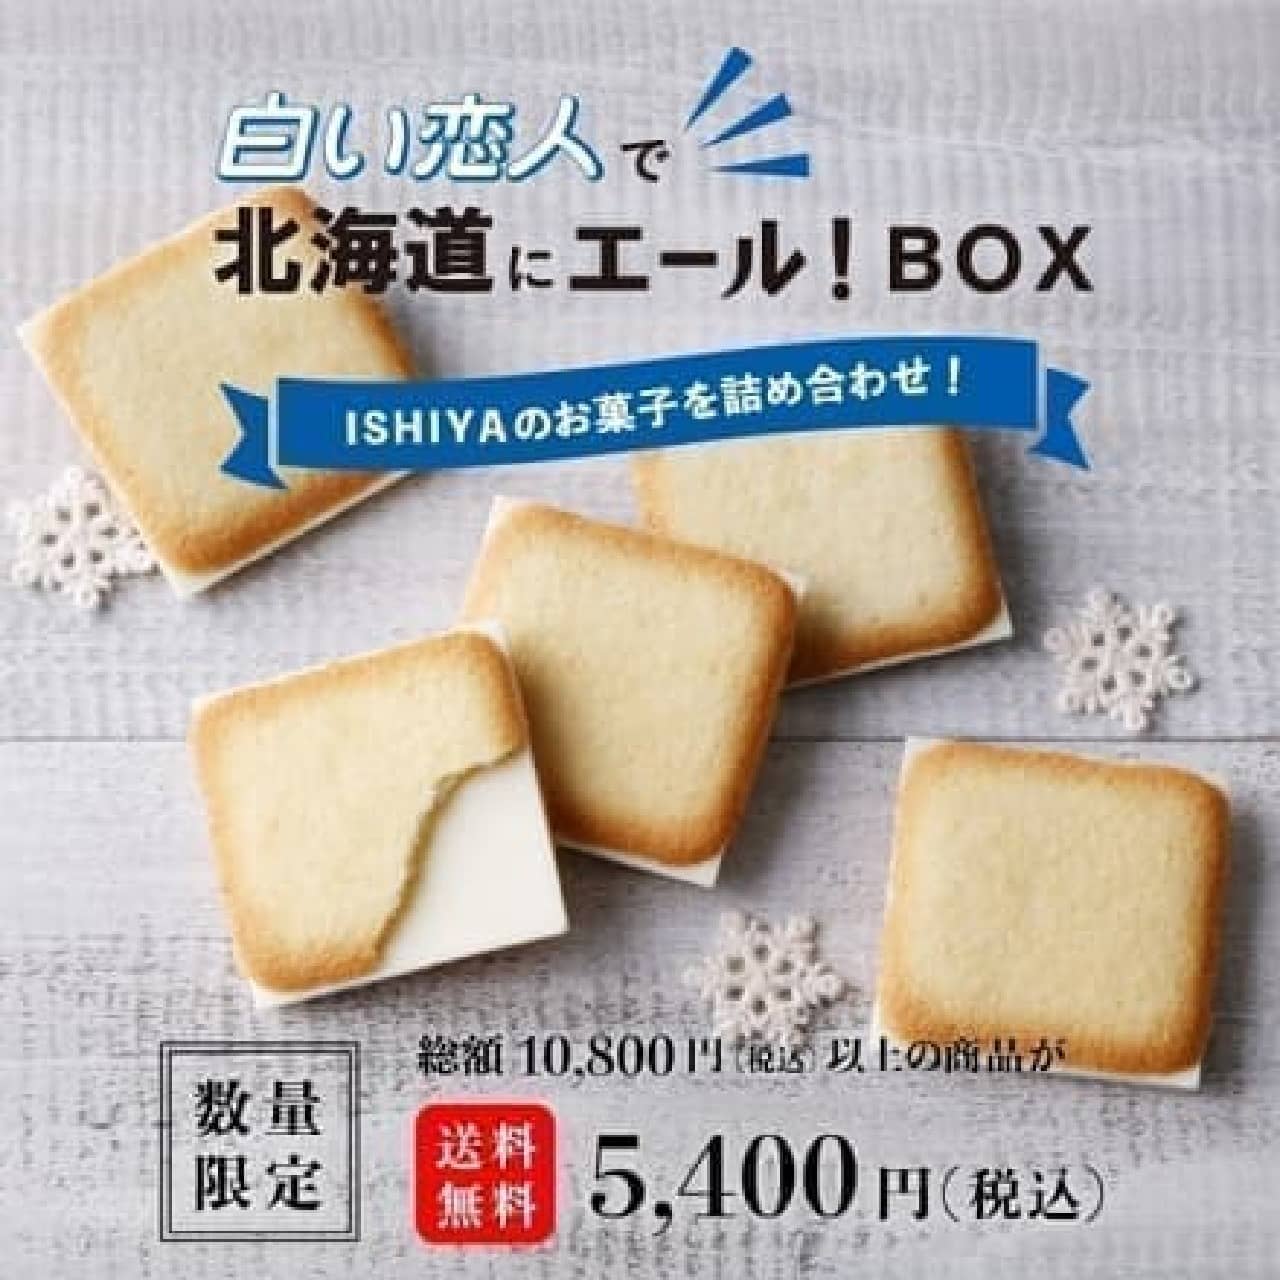 Ishiya Co., Ltd. "Shiroi Koibito ale in Hokkaido! BOX"